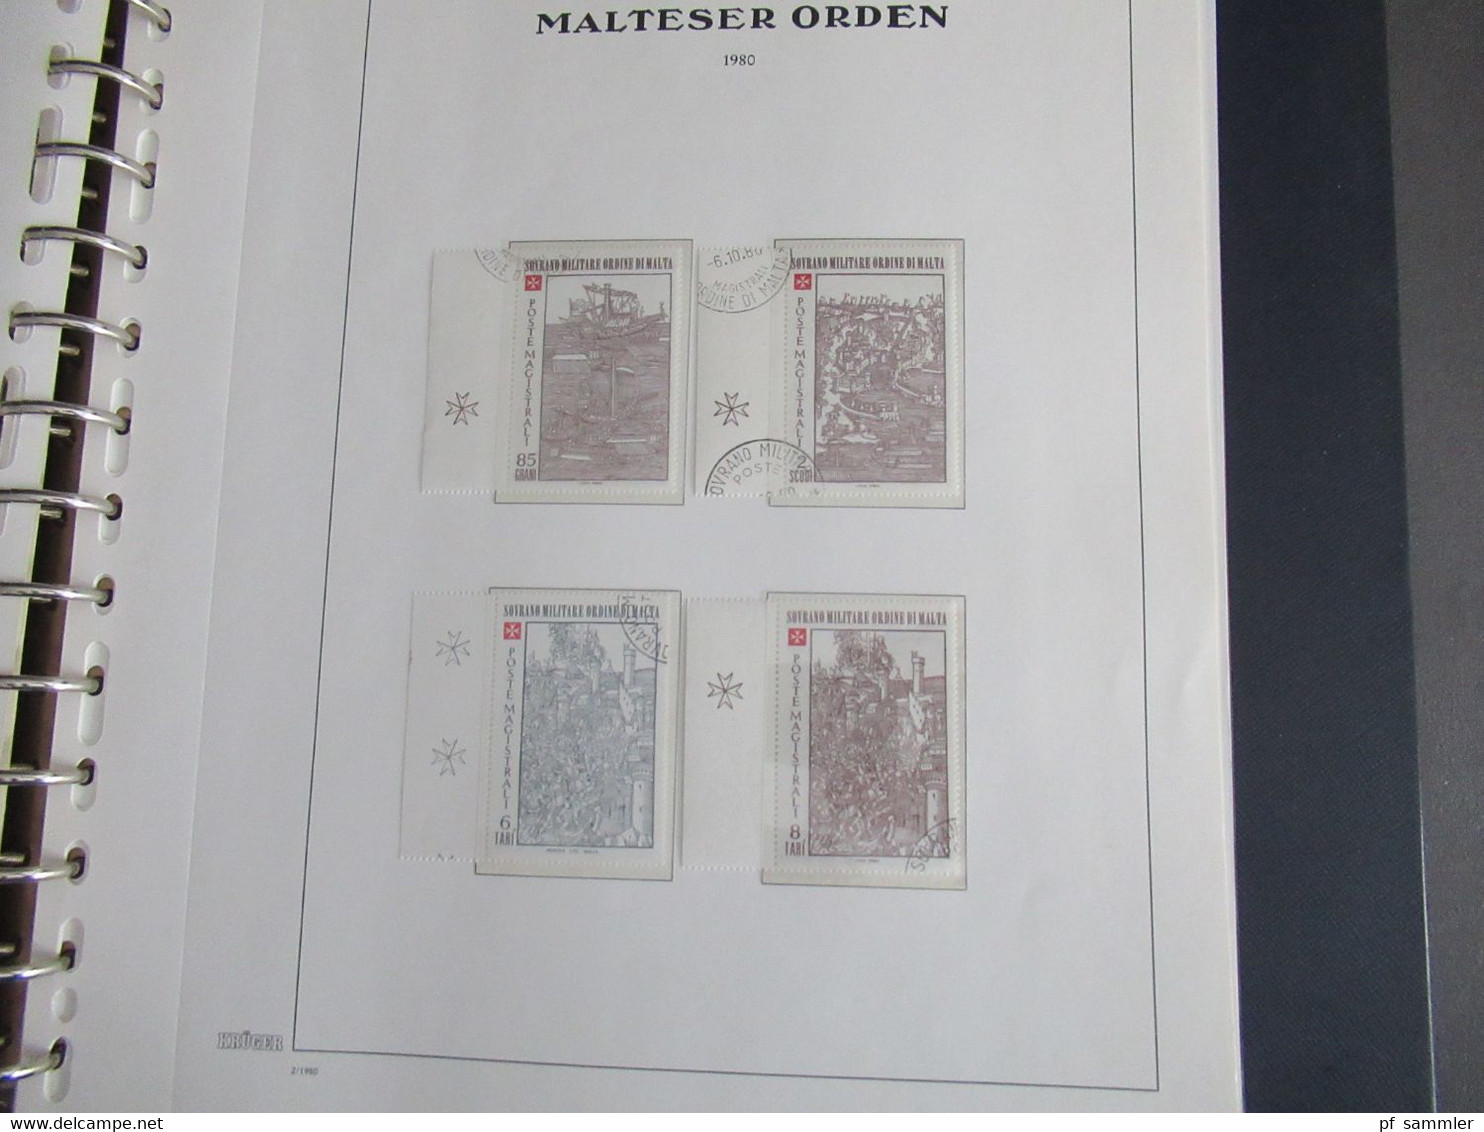 Sammlung Krüger VD Album Der Malteser Orden 1975 - 81 mit Portomarken doppelt geführt sauber ** und o. Viele Randstücke